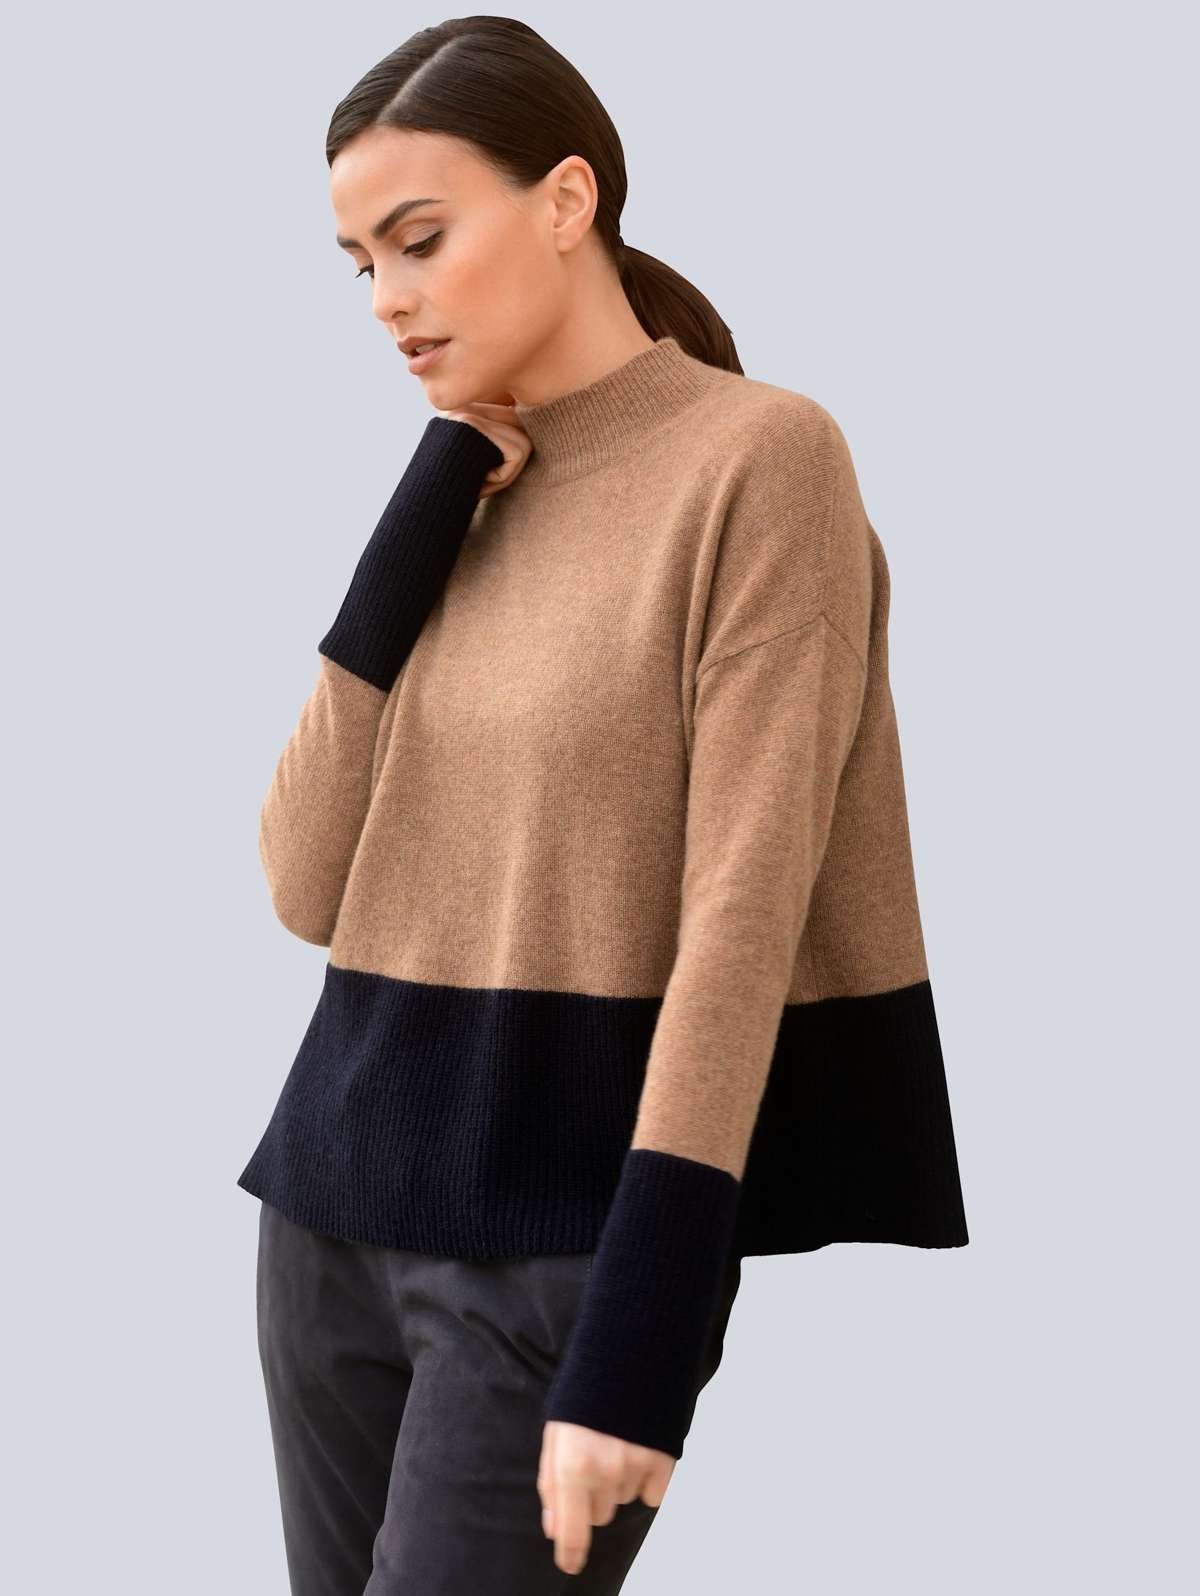 Вязаный пуловер в модной цветовой гамме.